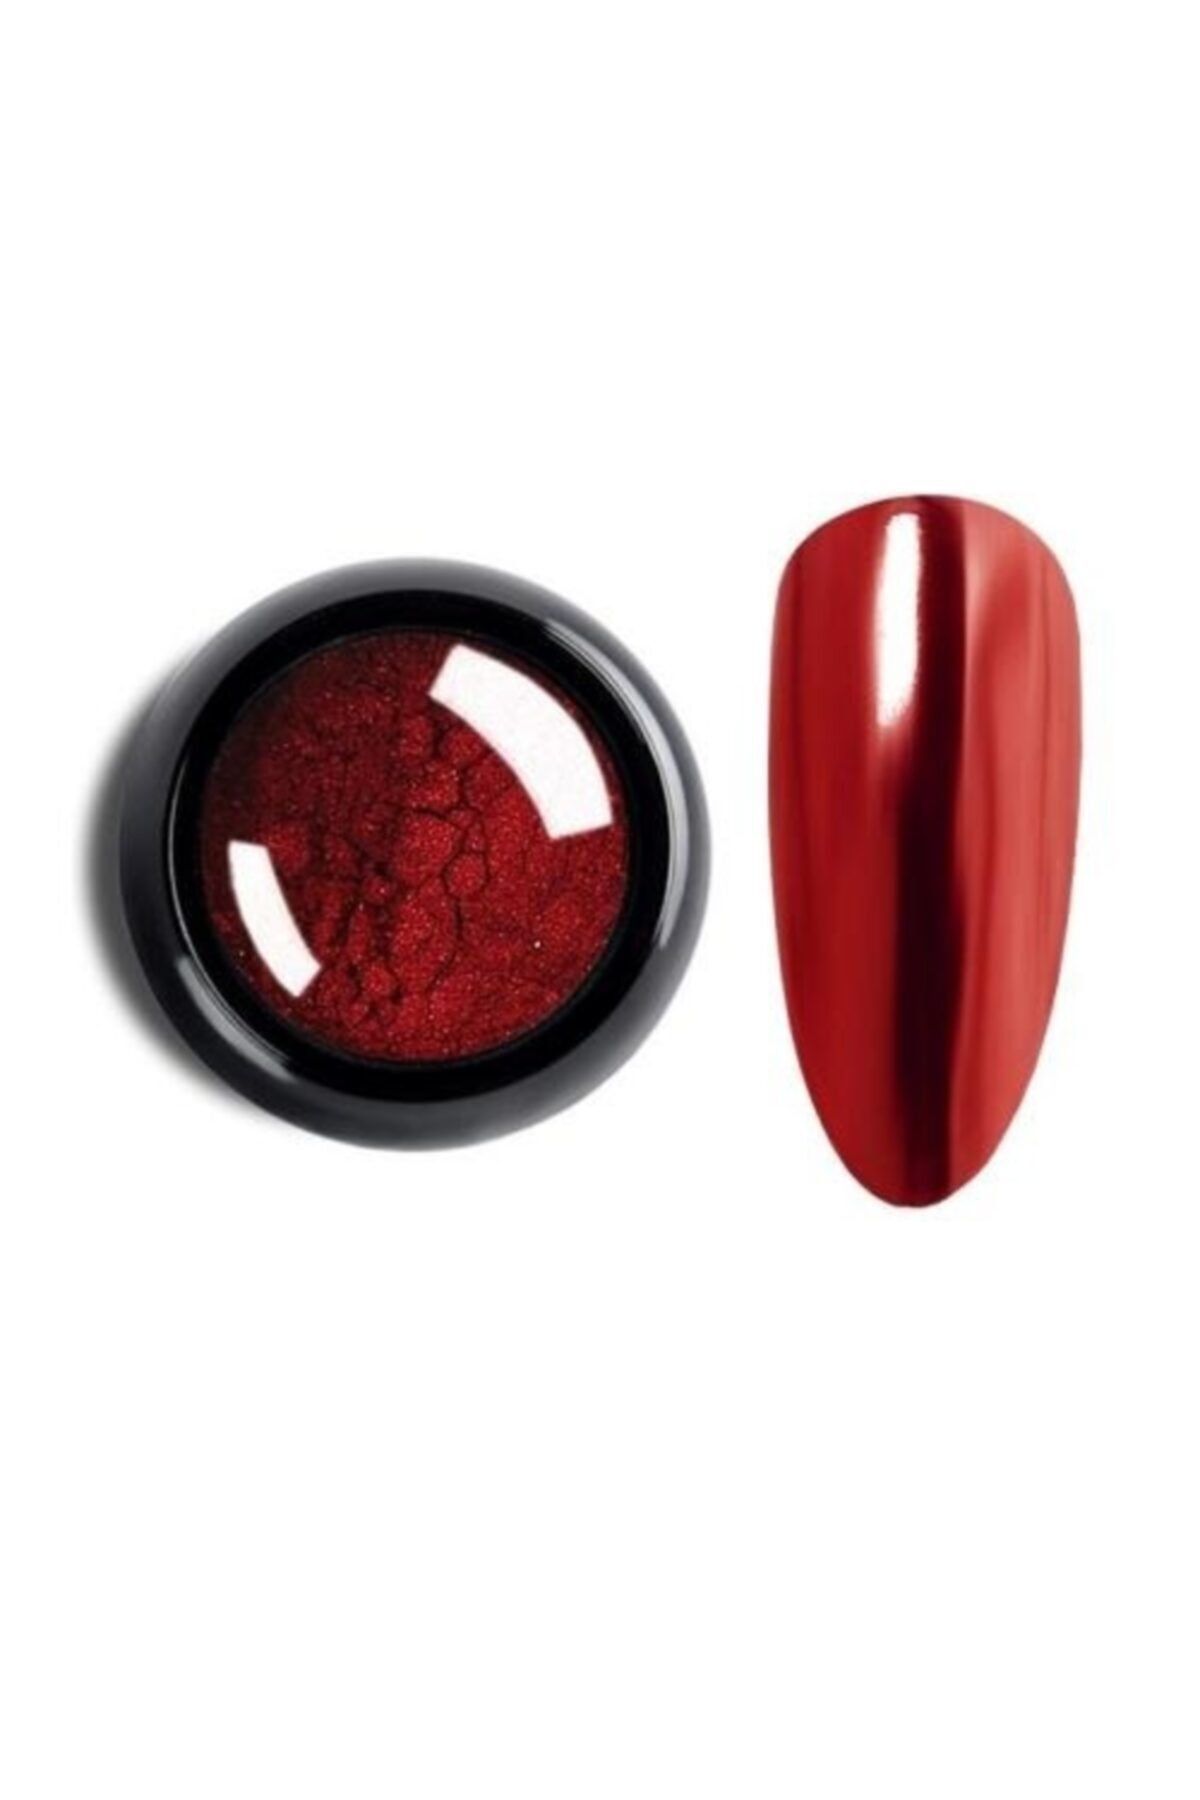 F05 Kırmızı Ayna Tozu Nail Art Krom Tozu Mirror Powder